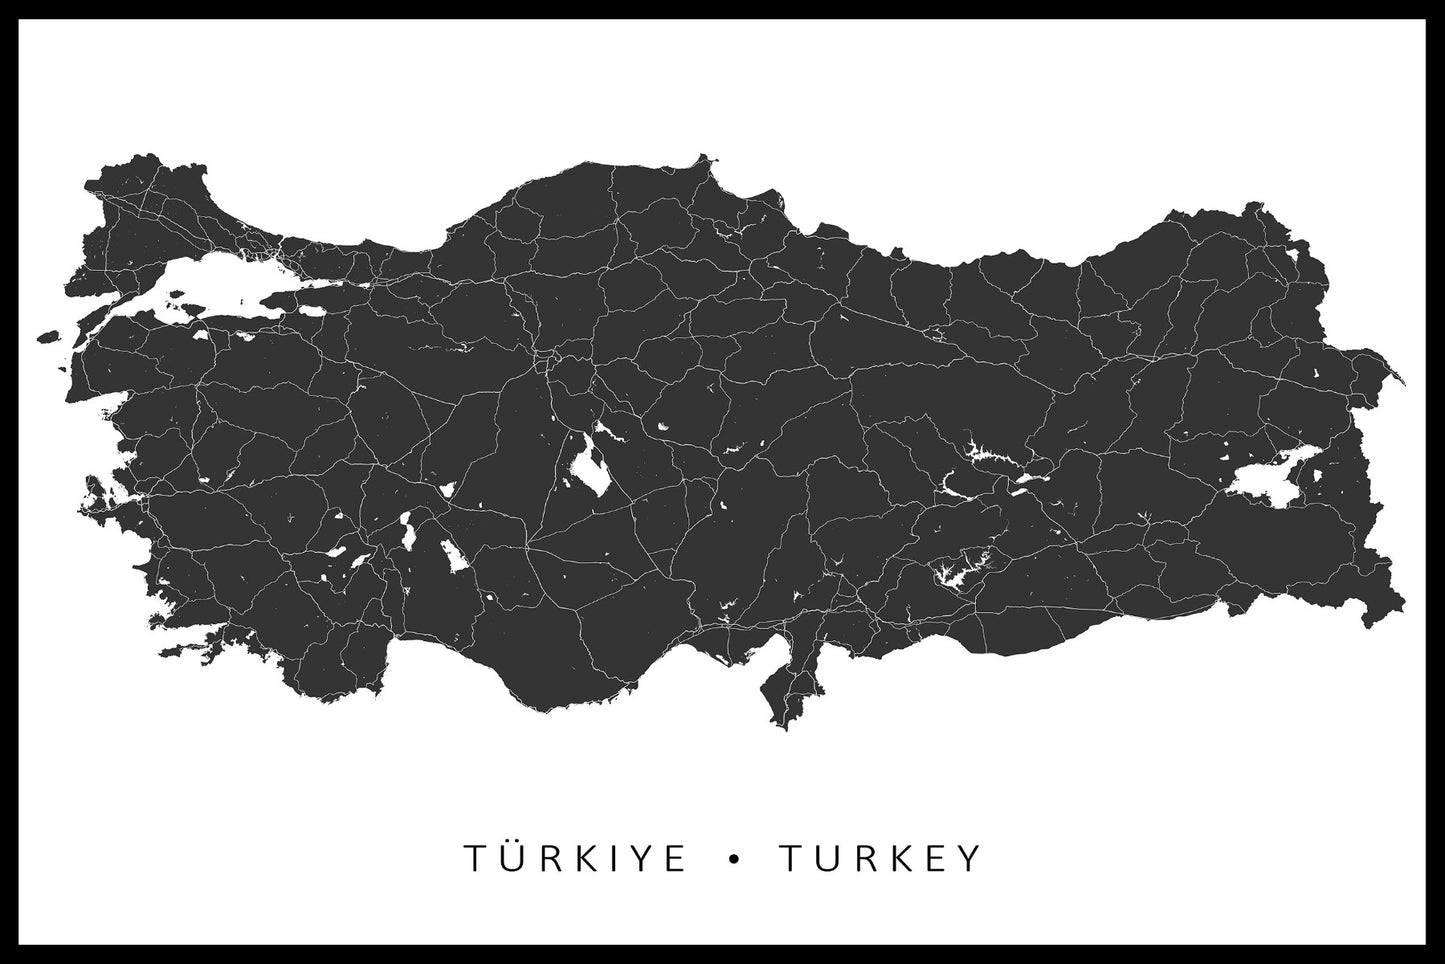  Items op de kaart van Turkije